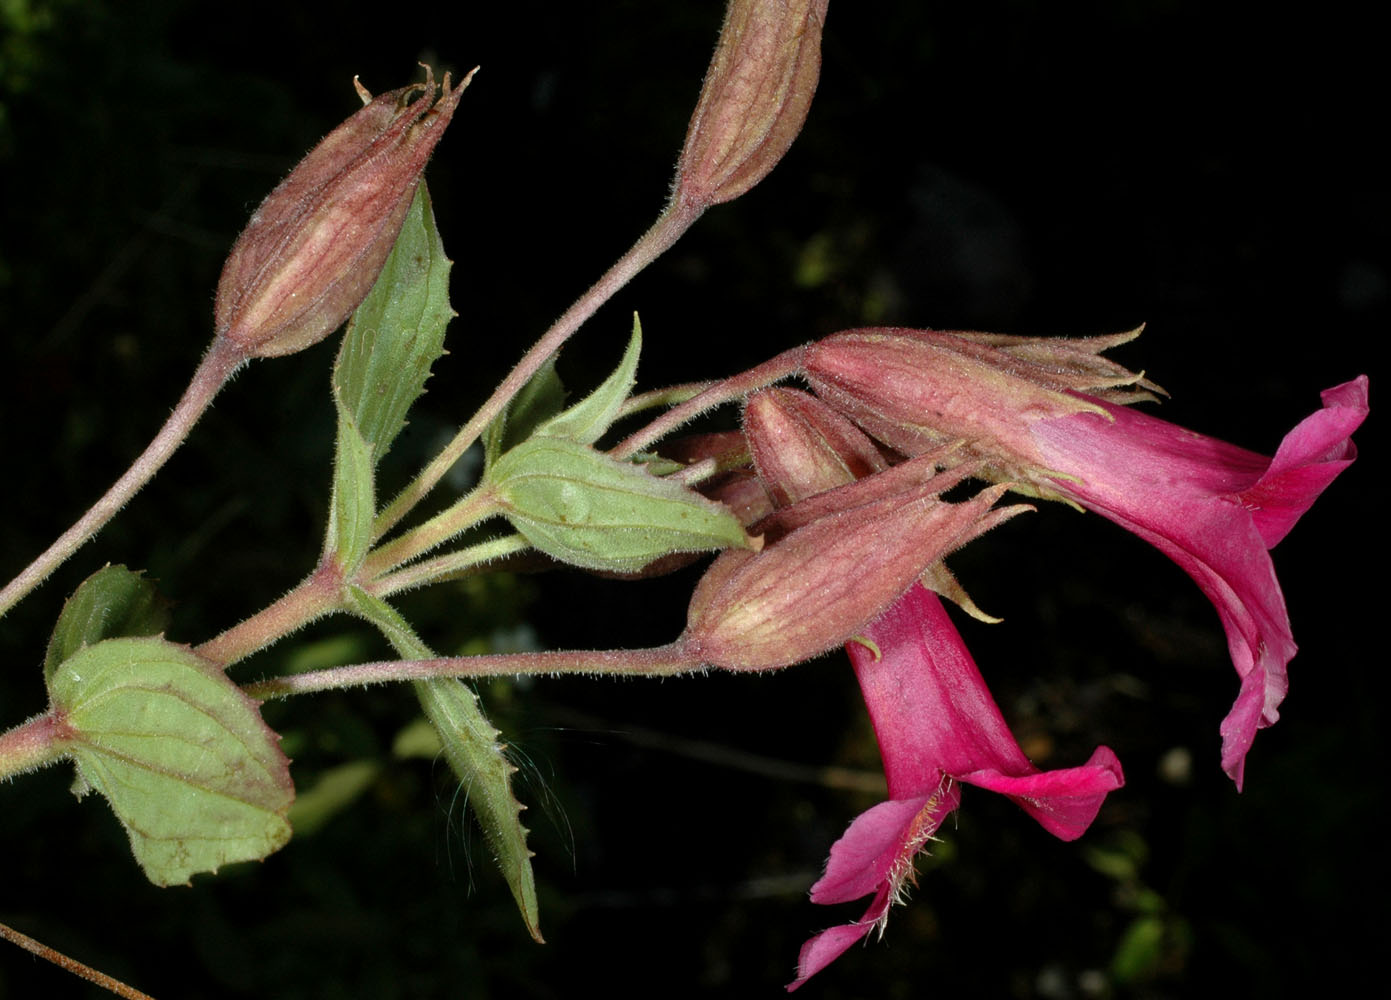 Flora of Eastern Washington Image: Erythranthe lewisii